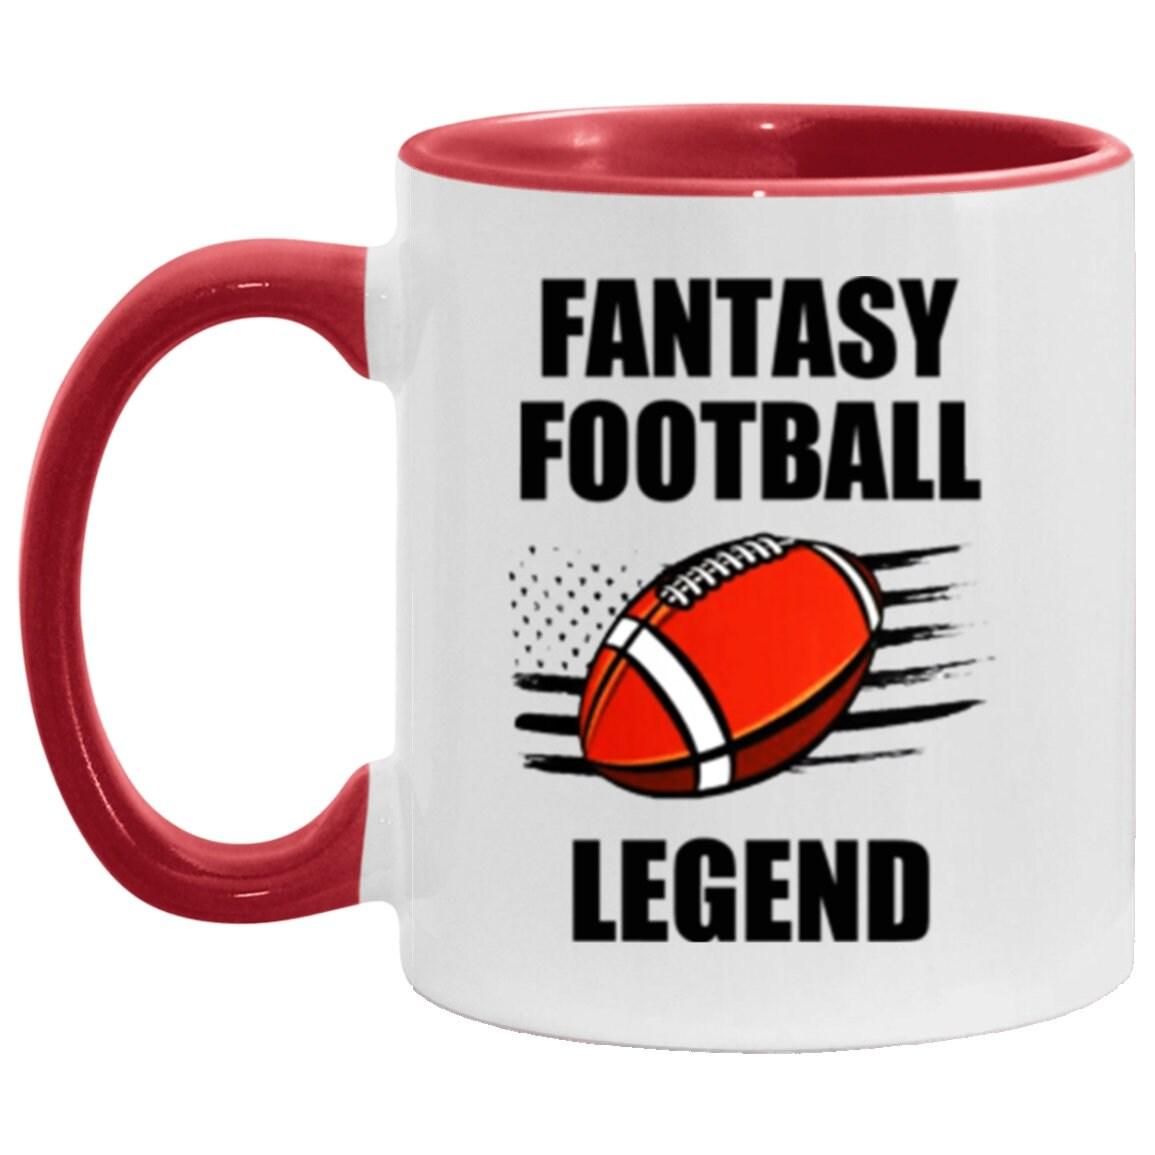 Taza con acento de leyenda del fútbol de fantasía, taza de fútbol FFL divertida, regalo de taza de deportes de fantasía, regalo para fanáticos del fútbol de fantasía - plusminusco.com